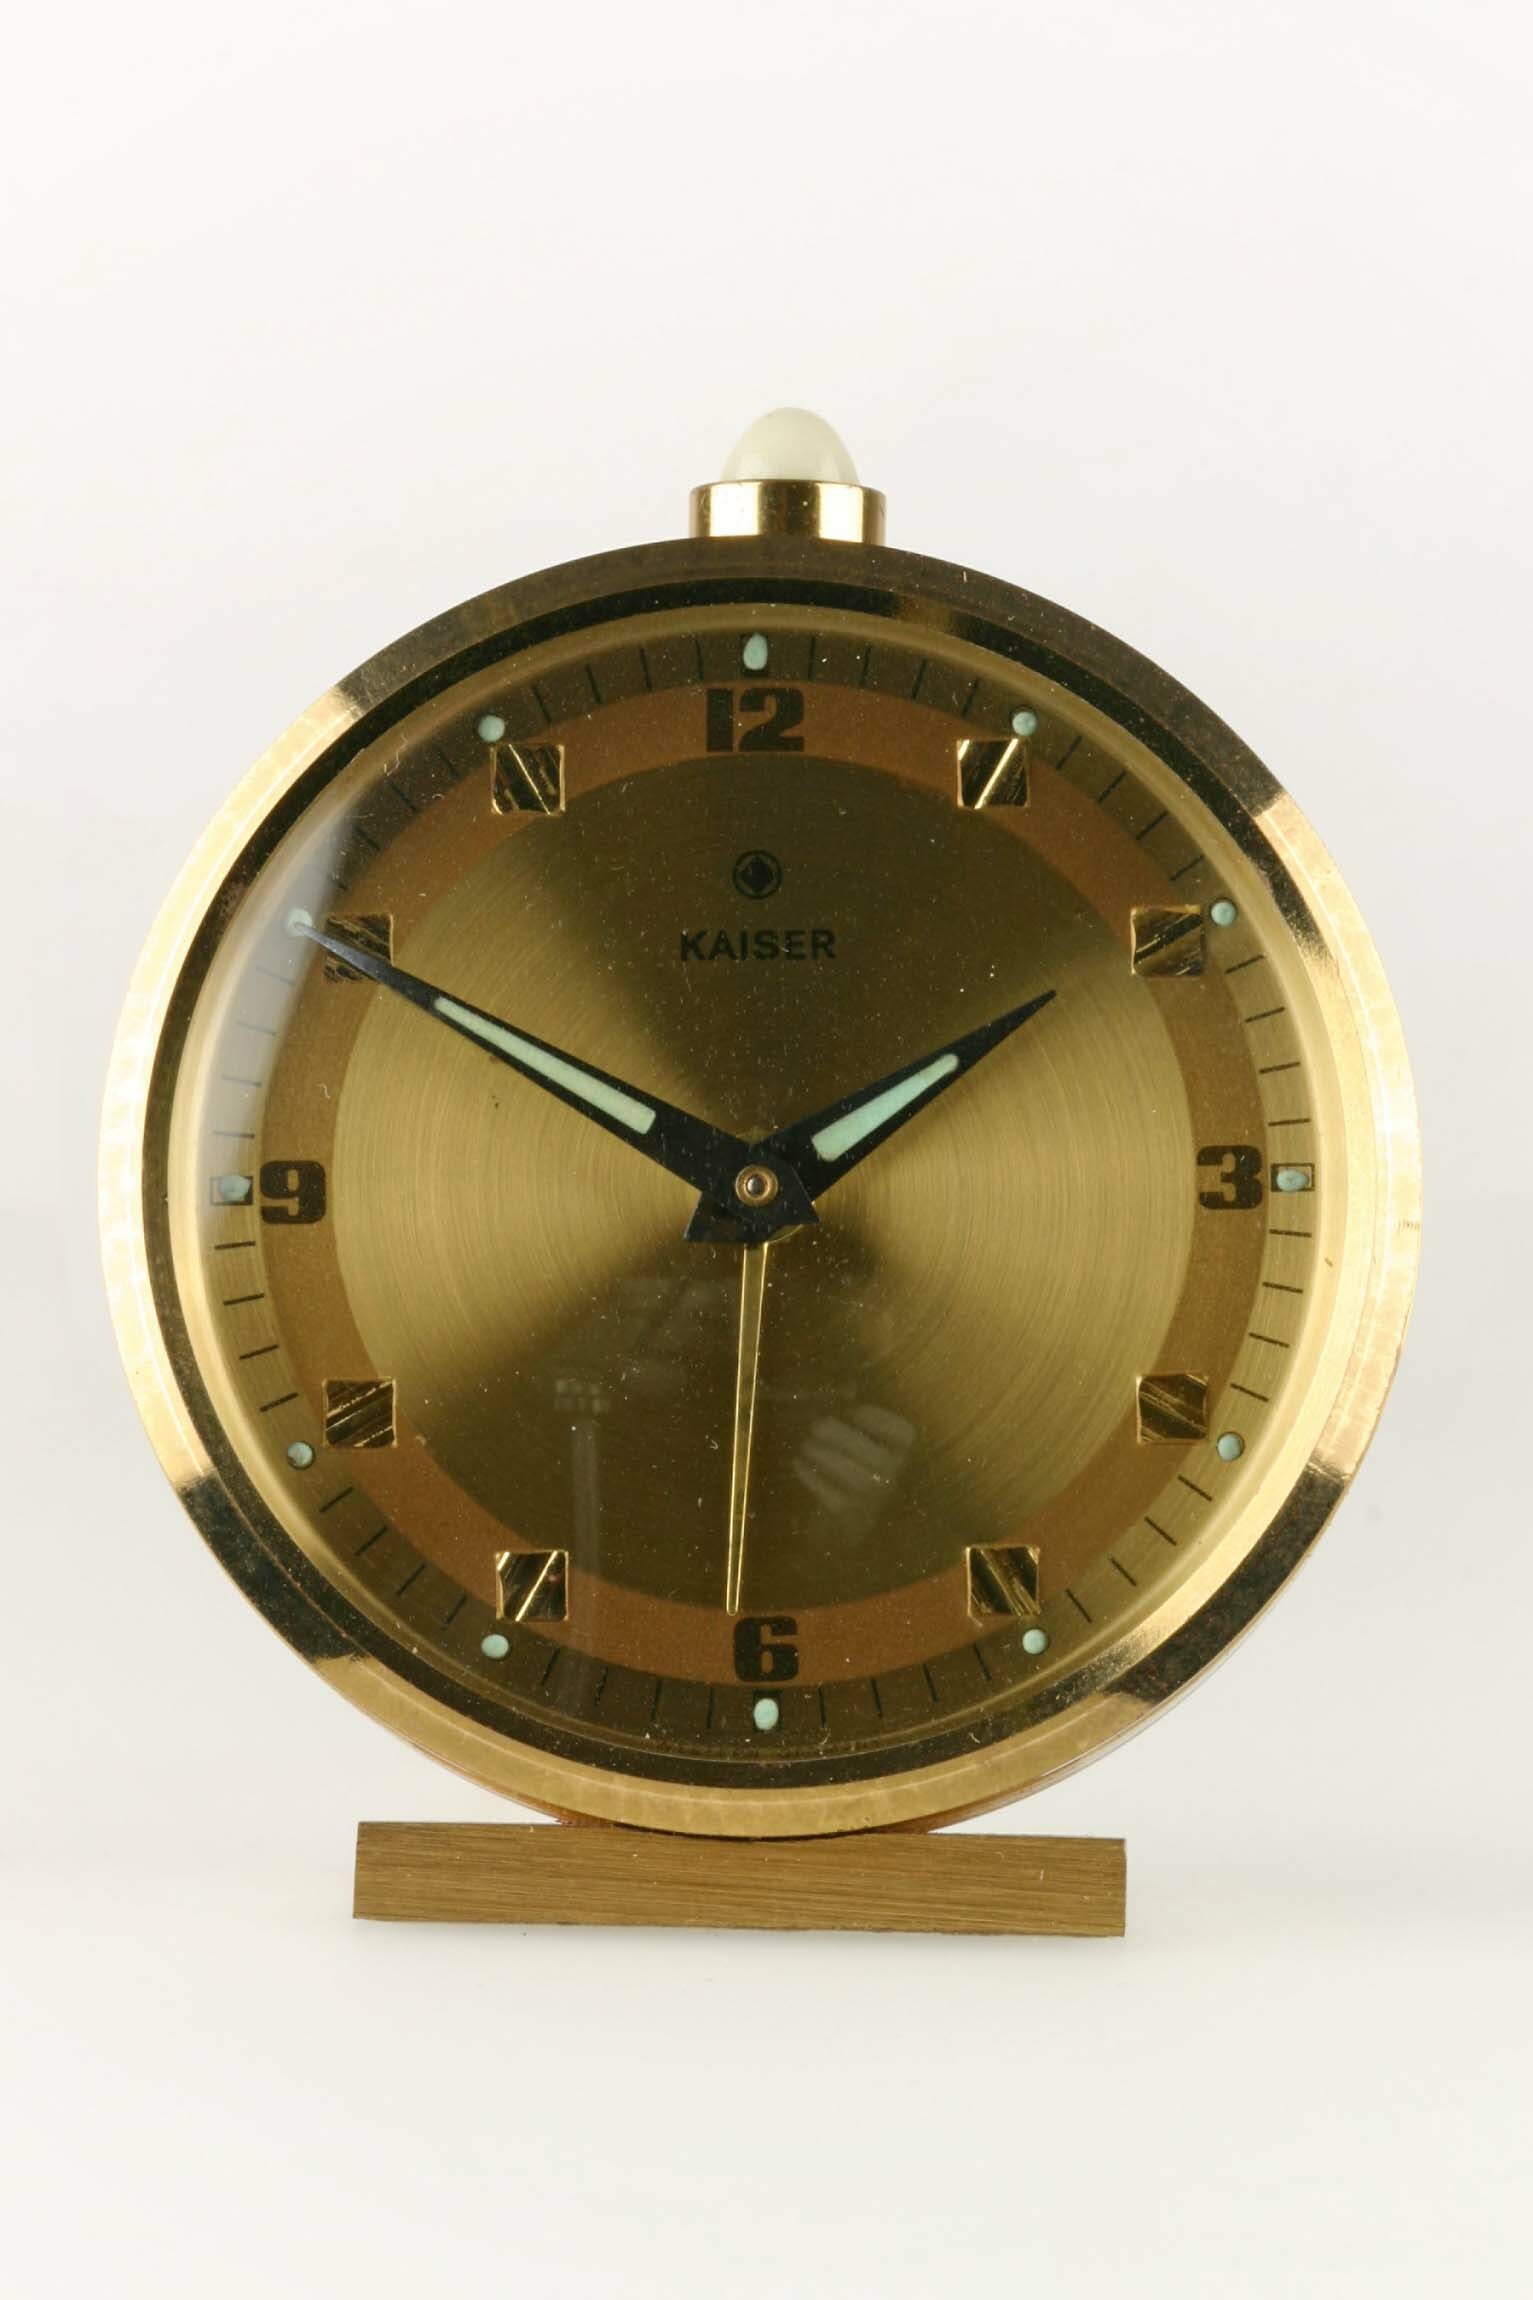 Rückwandglockenwecker, Kaiser, Villingen, um 1970 (Deutsches Uhrenmuseum CC BY-SA)